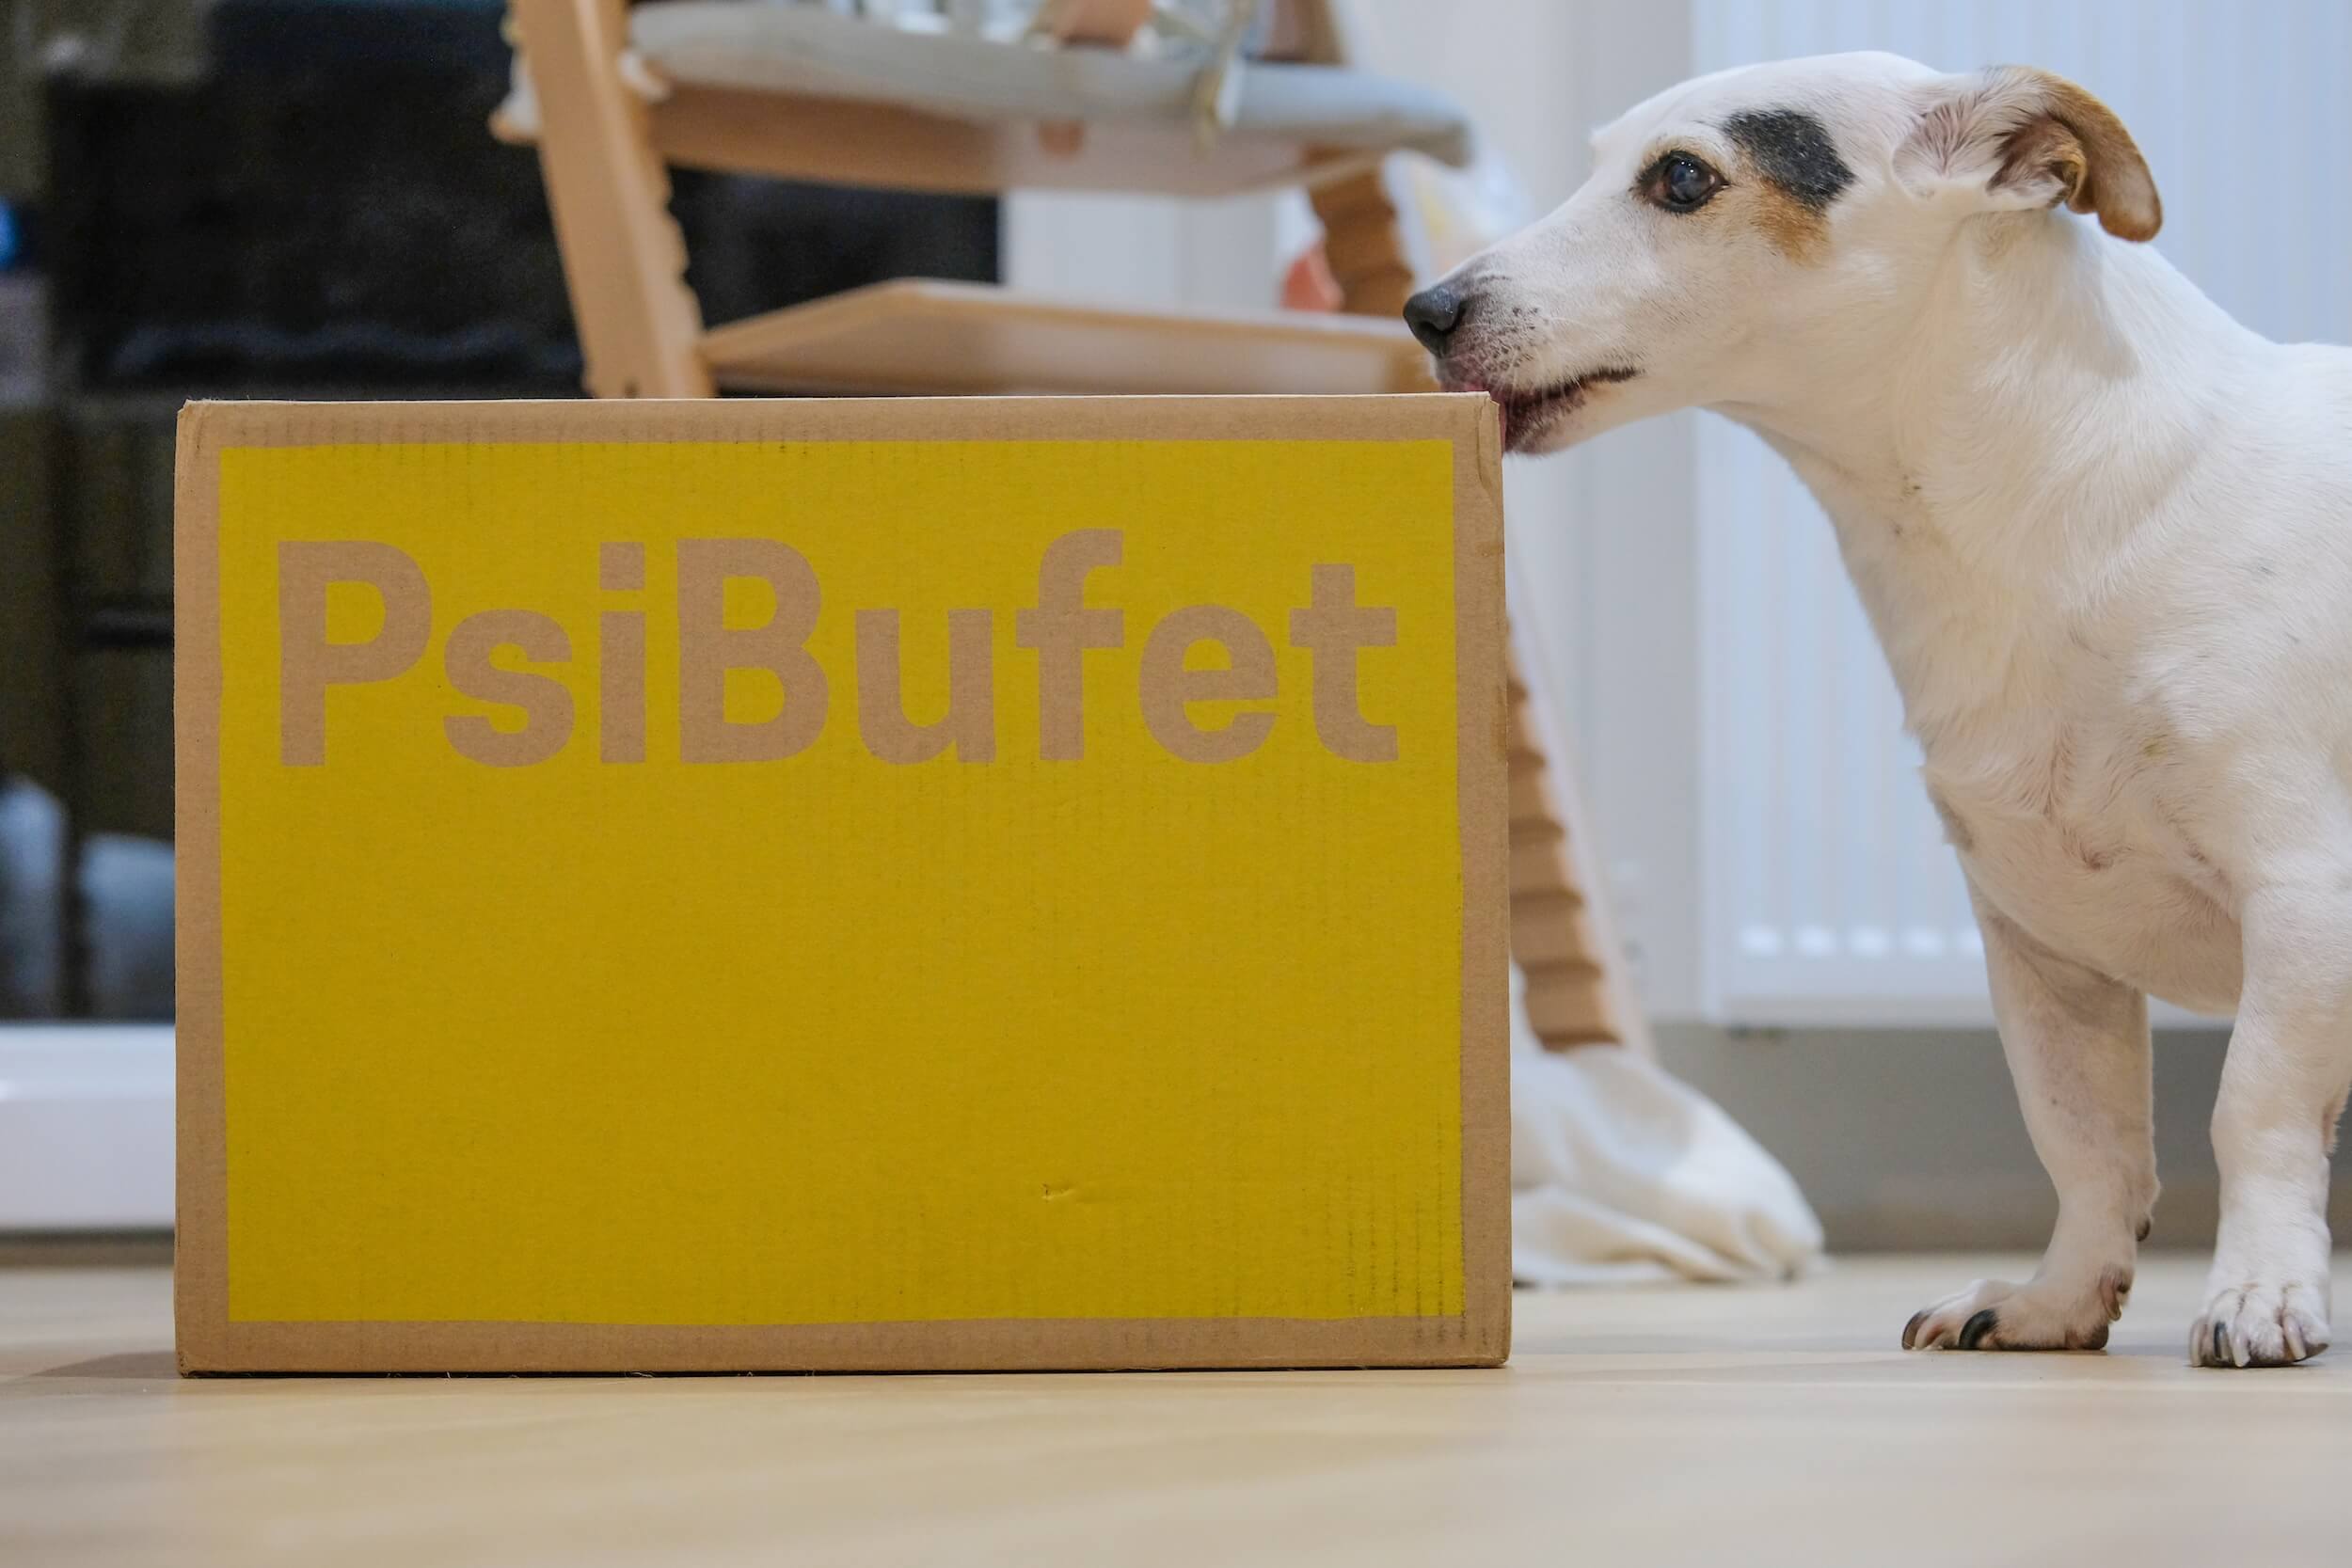 Sprawdzam Psi Bufet - testuje dietę dla psów - opinia? 🤔